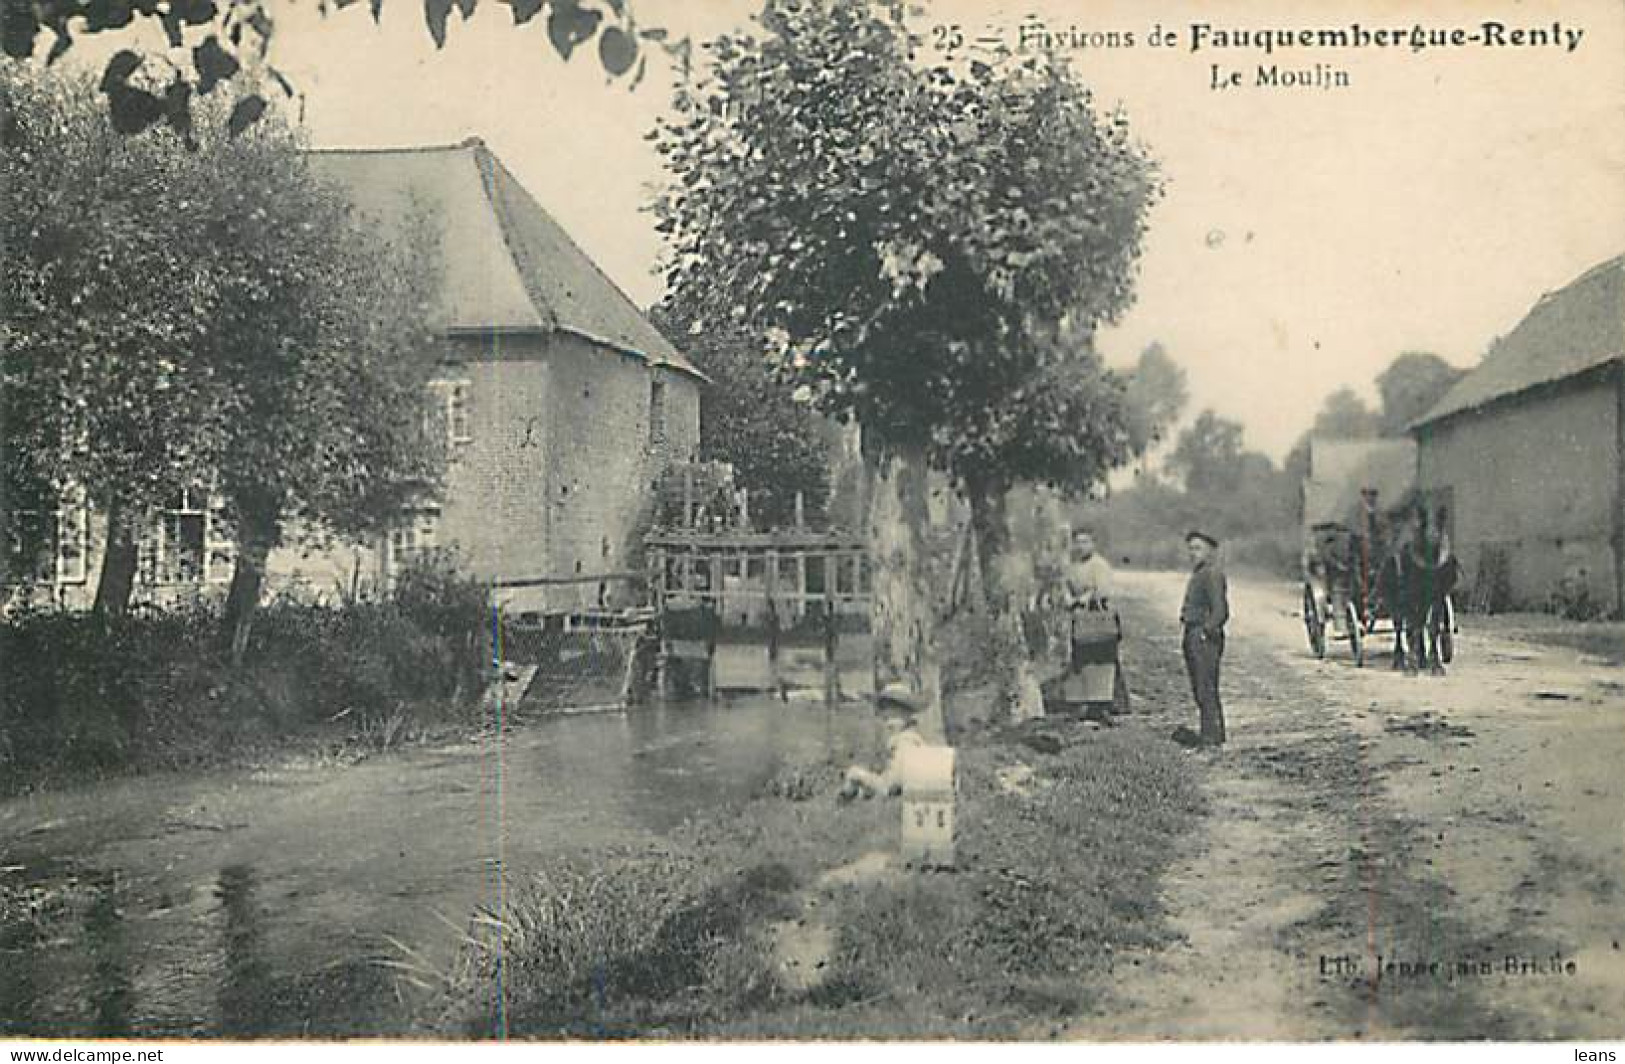 FAUQUEMBERGUE RENTY Environs - Le Moulin - 25 (attelage) - Fauquembergues